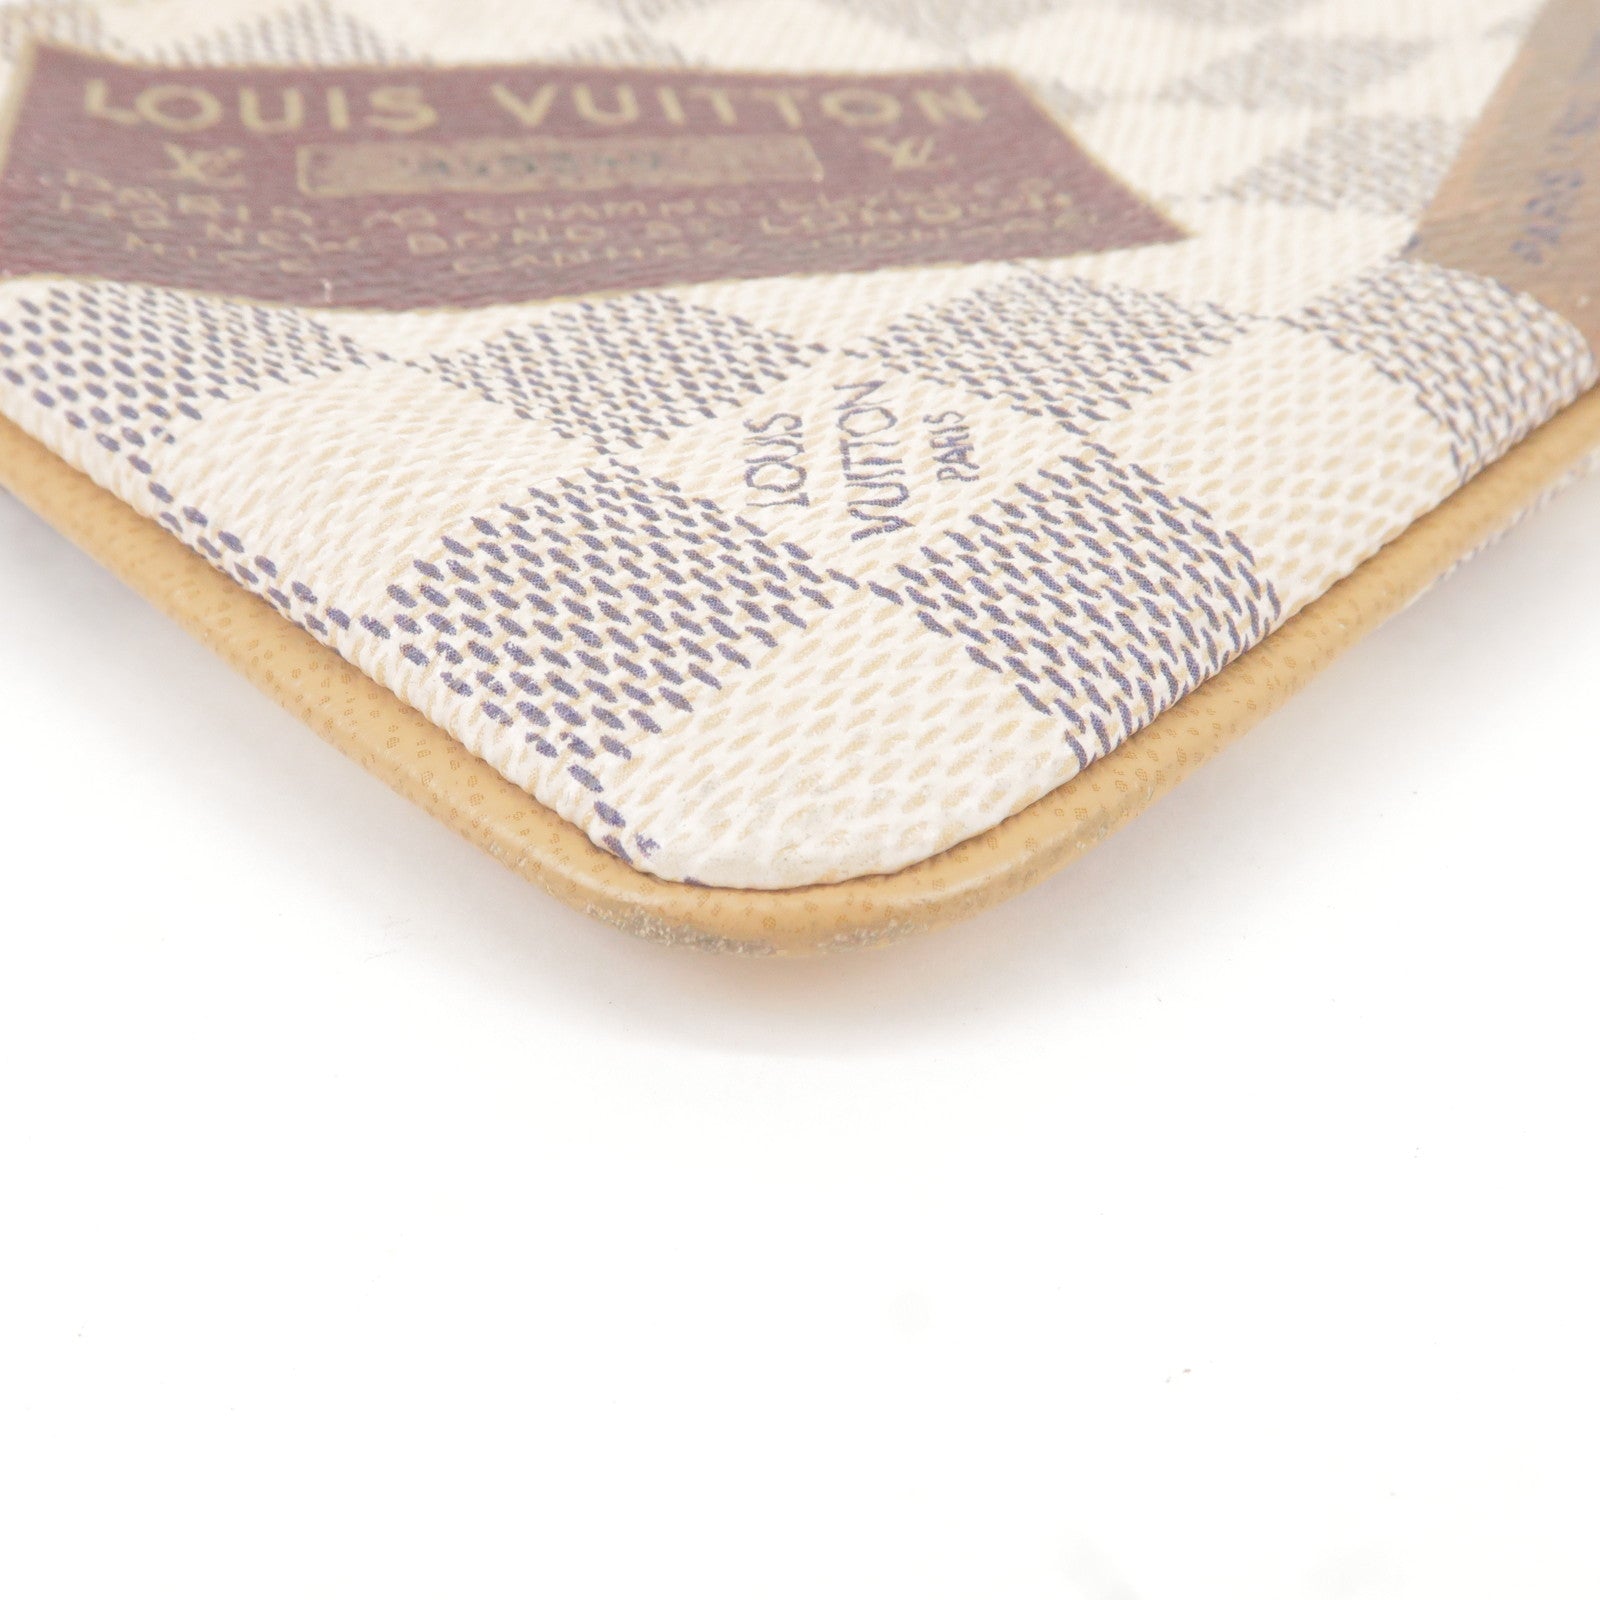 Pochette - Colletion - Damier - N63078 – dct - Louis - Milla - Vuitton -  Travel - ep_vintage luxury Store - Louis Vuitton Micro Noé - Azur